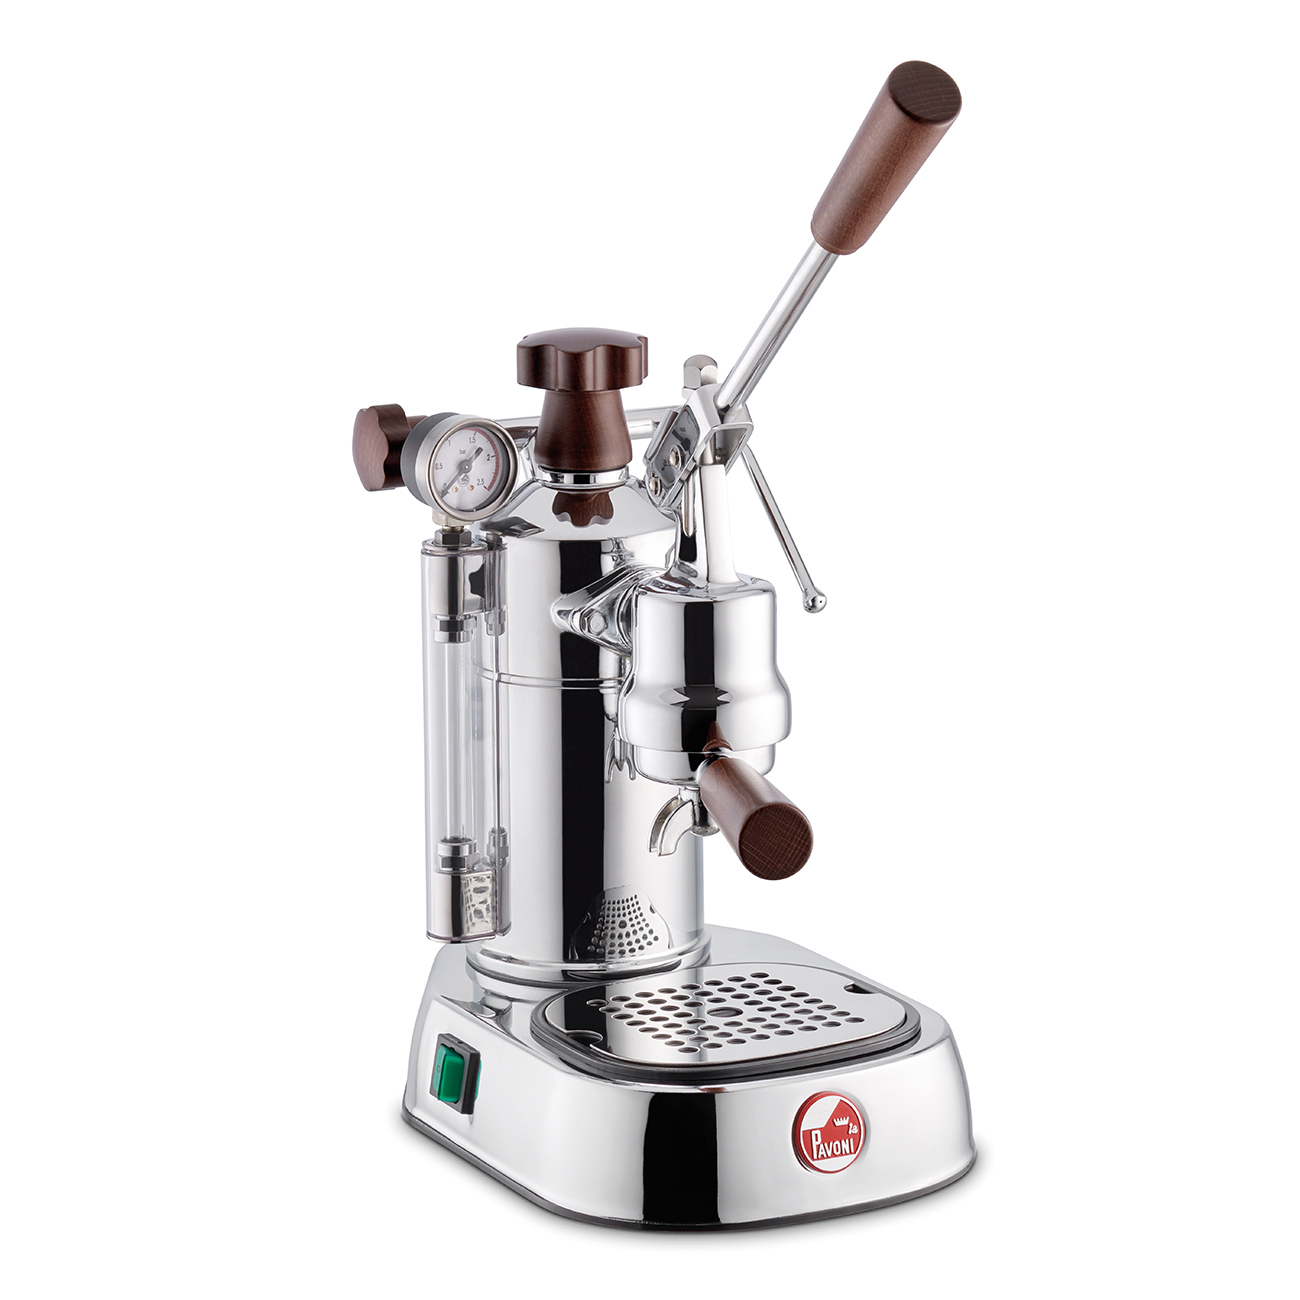 La Pavoni | Manuelle espressomaskine Forkromet messing - LPLPLH01EU_1